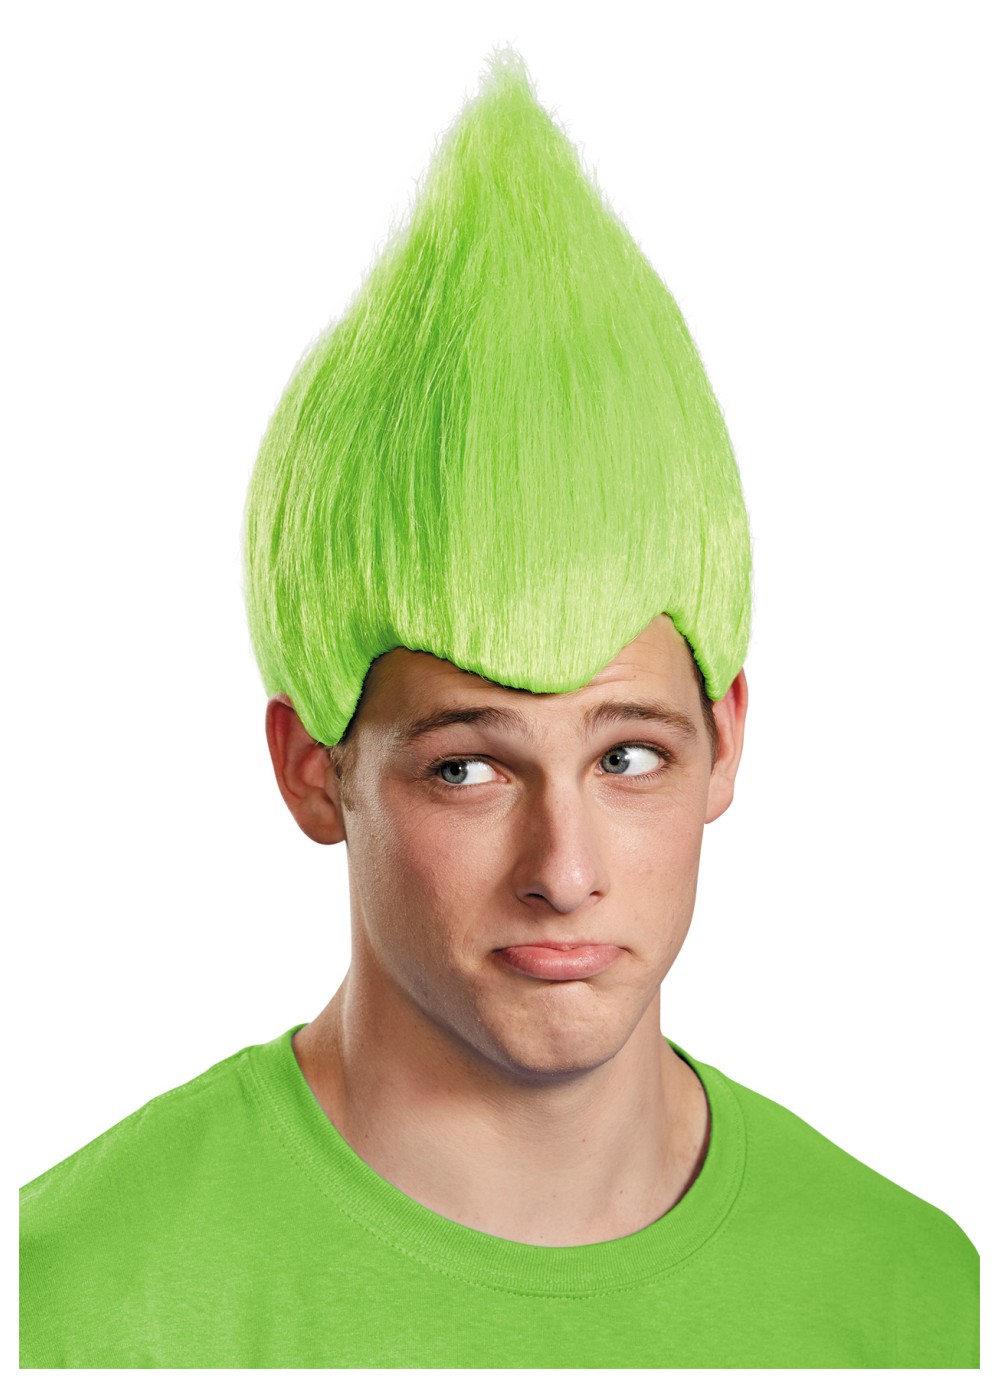 Green Wacky Troll Wig